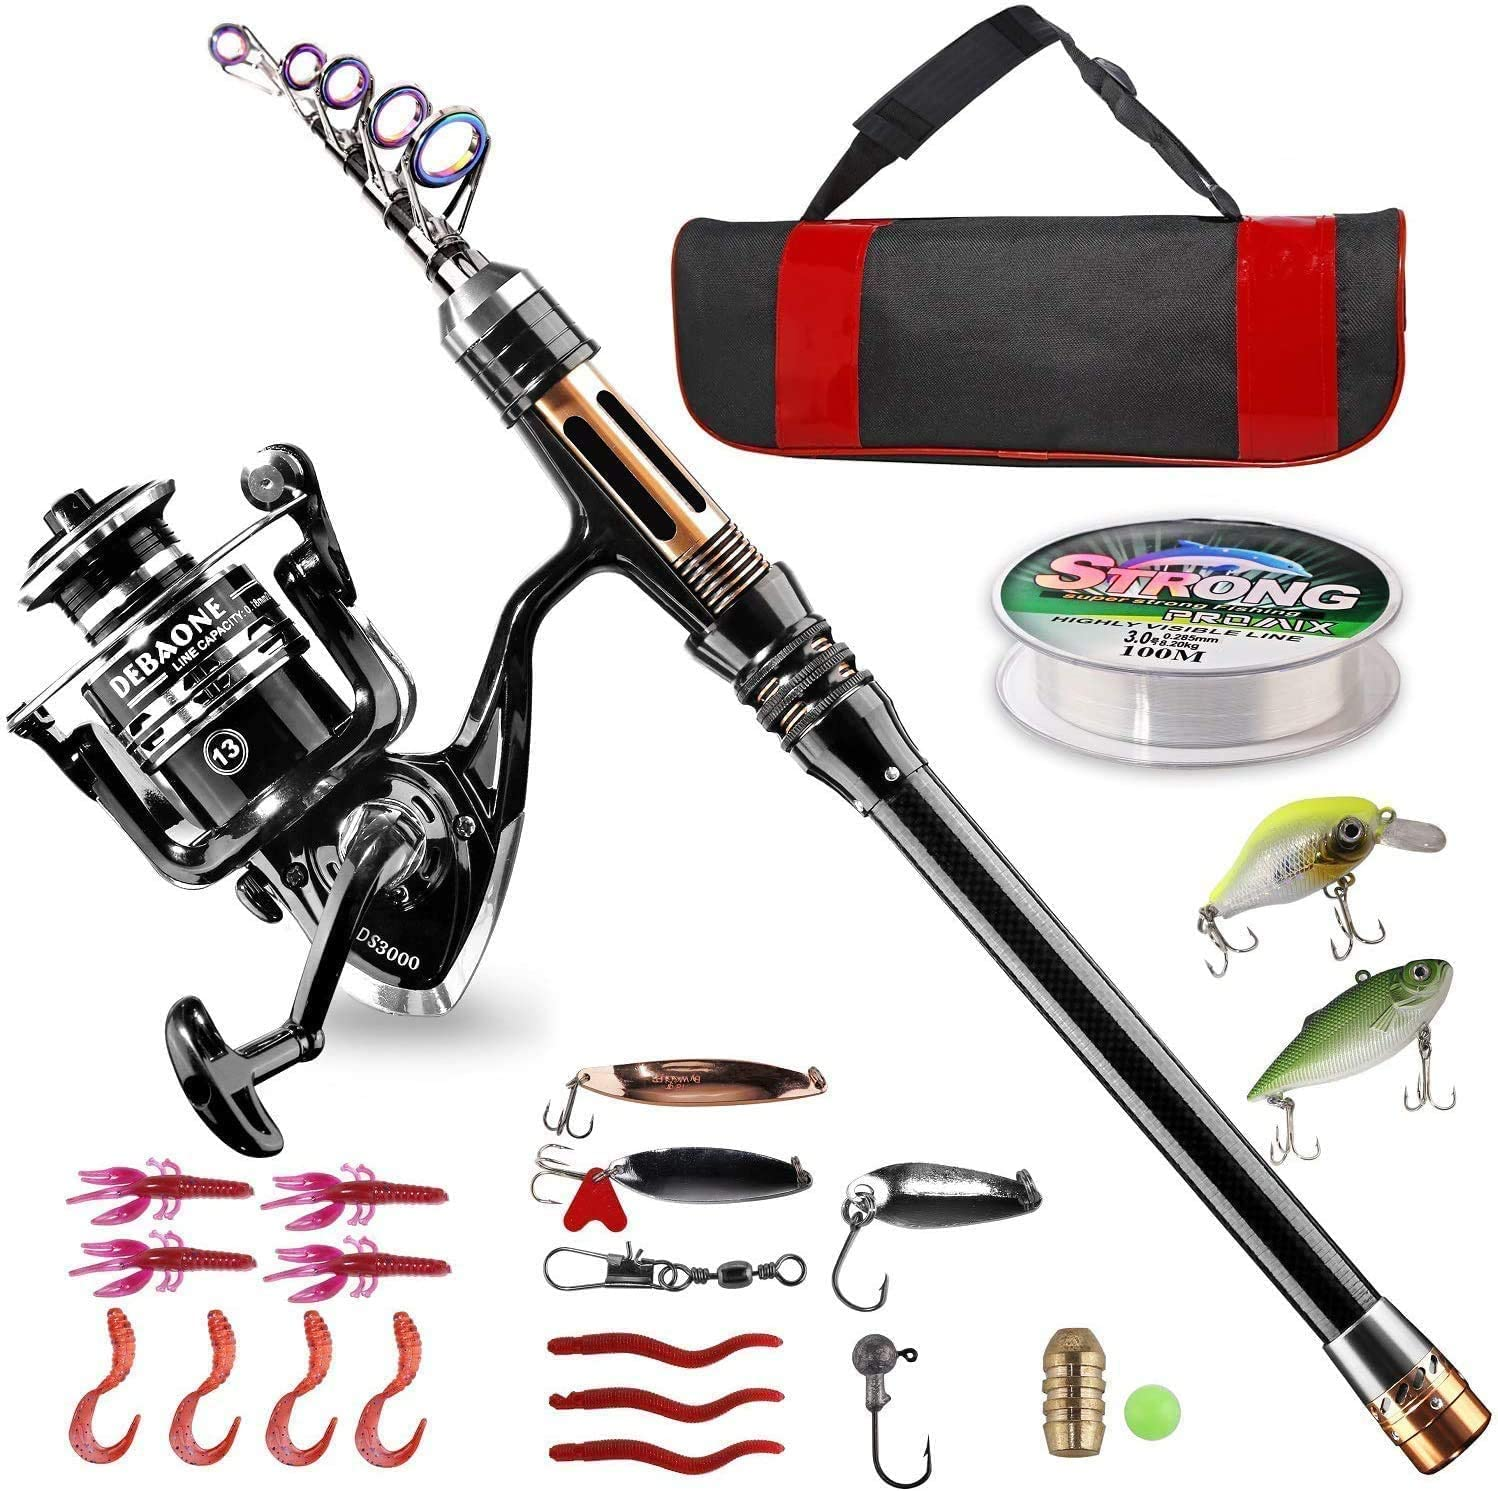 Bluefire Fishing Rod Kit, Carbon Fiber Telescopic Fishing Pole and